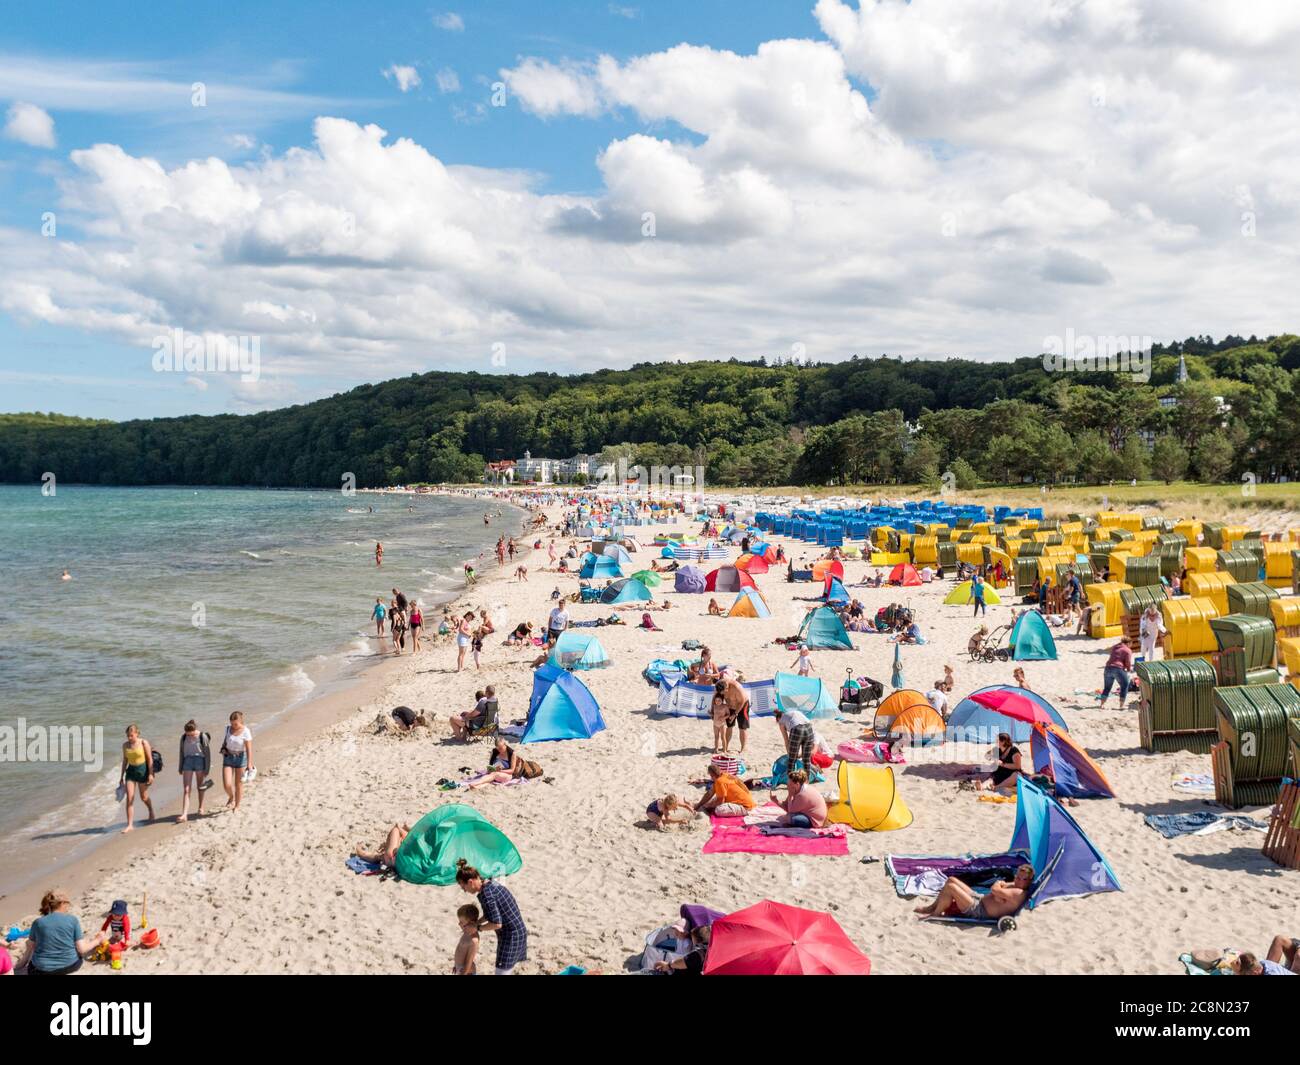 Strand in Binz auf der Insel Rügen an der Ostsee mit vielen Touristen am Badestrand während des Urlaubs in den Sommerferien, Strandkörbe mit Badegäste Foto de stock